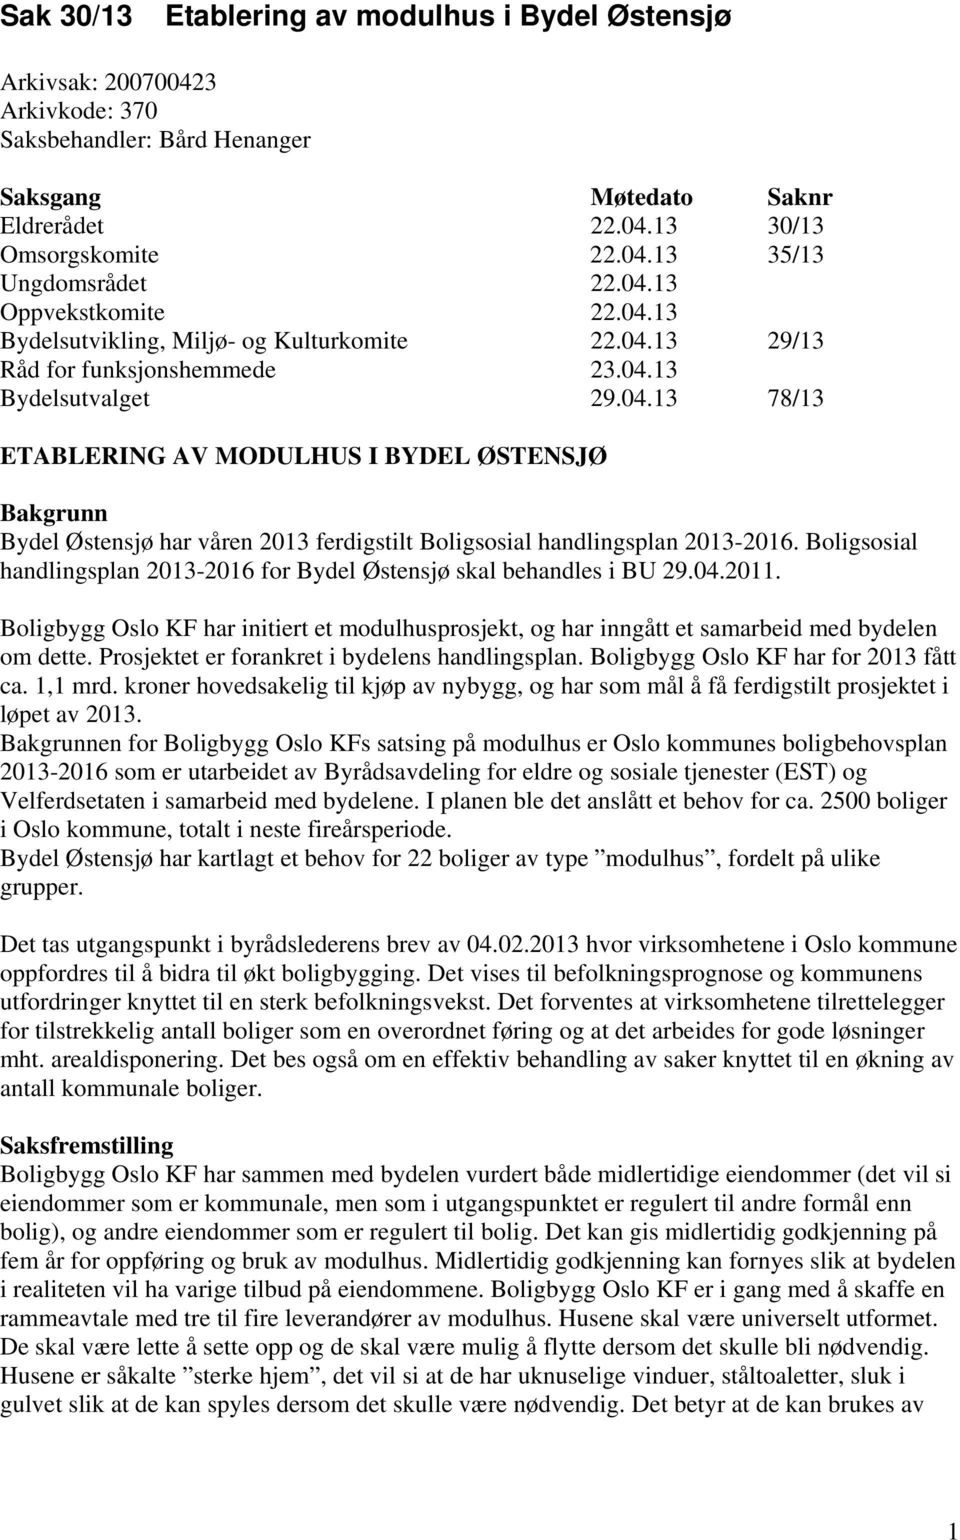 Boligsosial handlingsplan 2013-2016 for Bydel Østensjø skal behandles i BU 29.04.2011. Boligbygg Oslo KF har initiert et modulhusprosjekt, og har inngått et samarbeid med bydelen om dette.